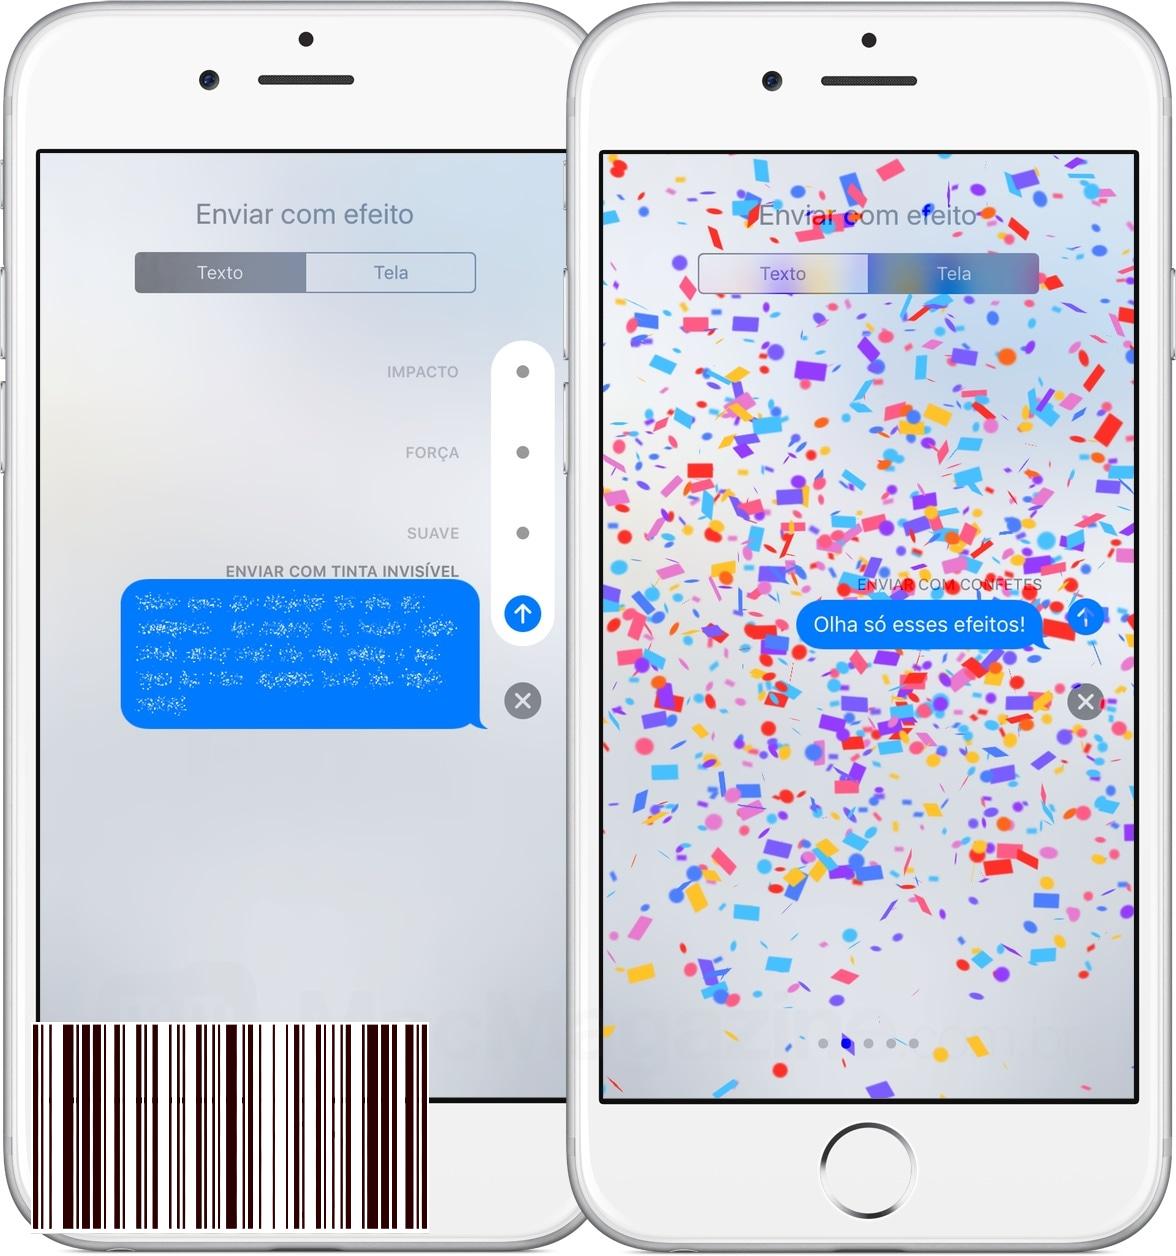 التأثيرات في iOS 10 iMessage